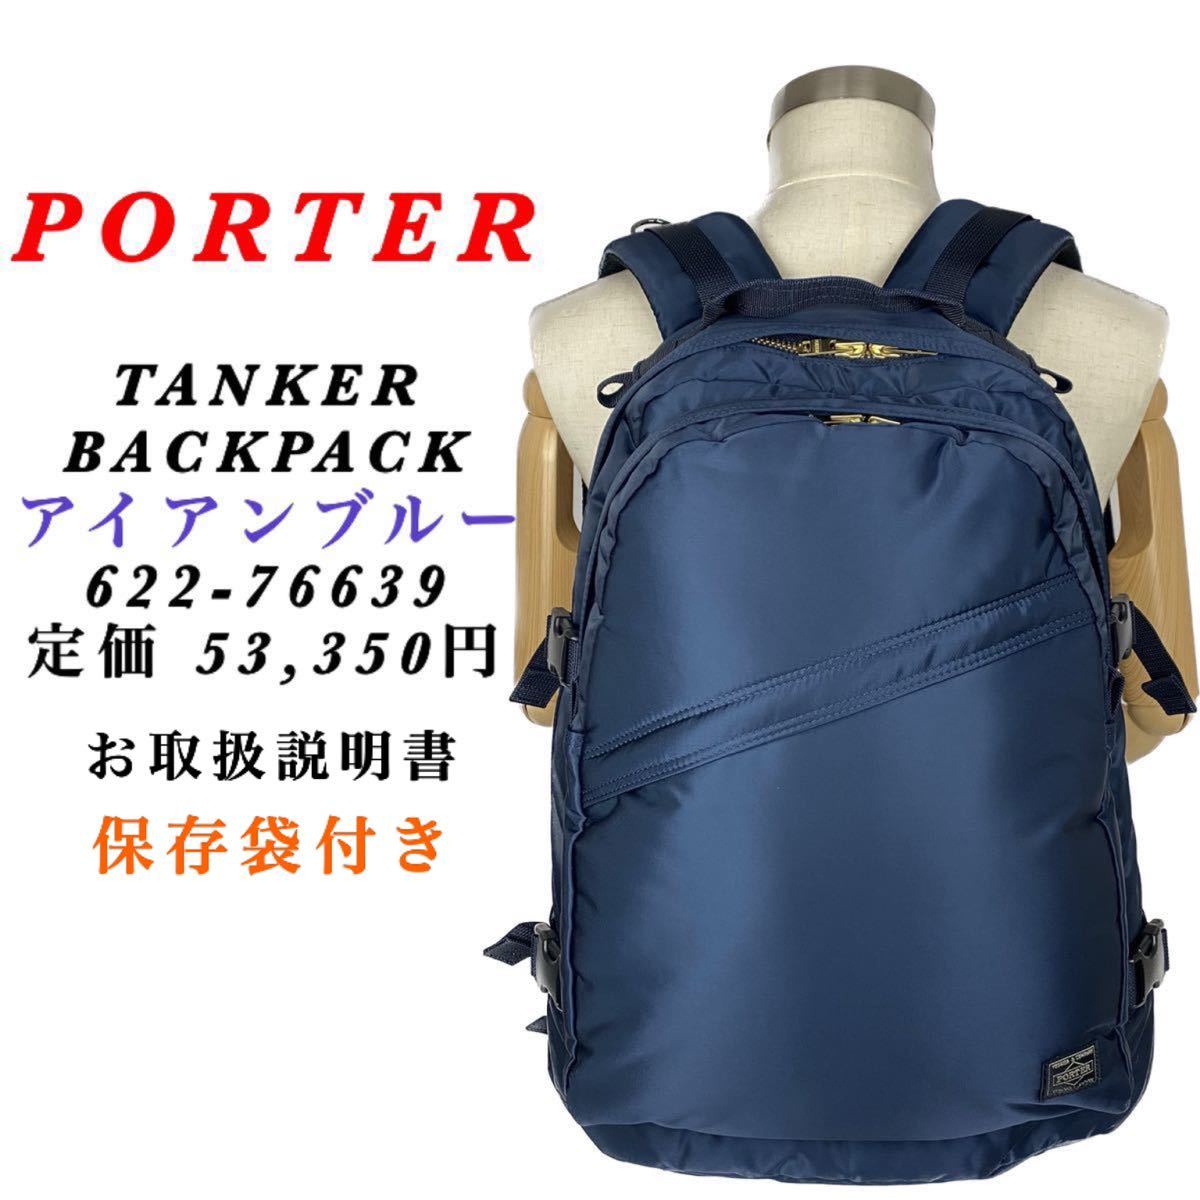 【最新型】PORTER / TANKER BACKPACK / アイアンブルー ポーター タンカー バックパック 大容量 男女兼用 多機能